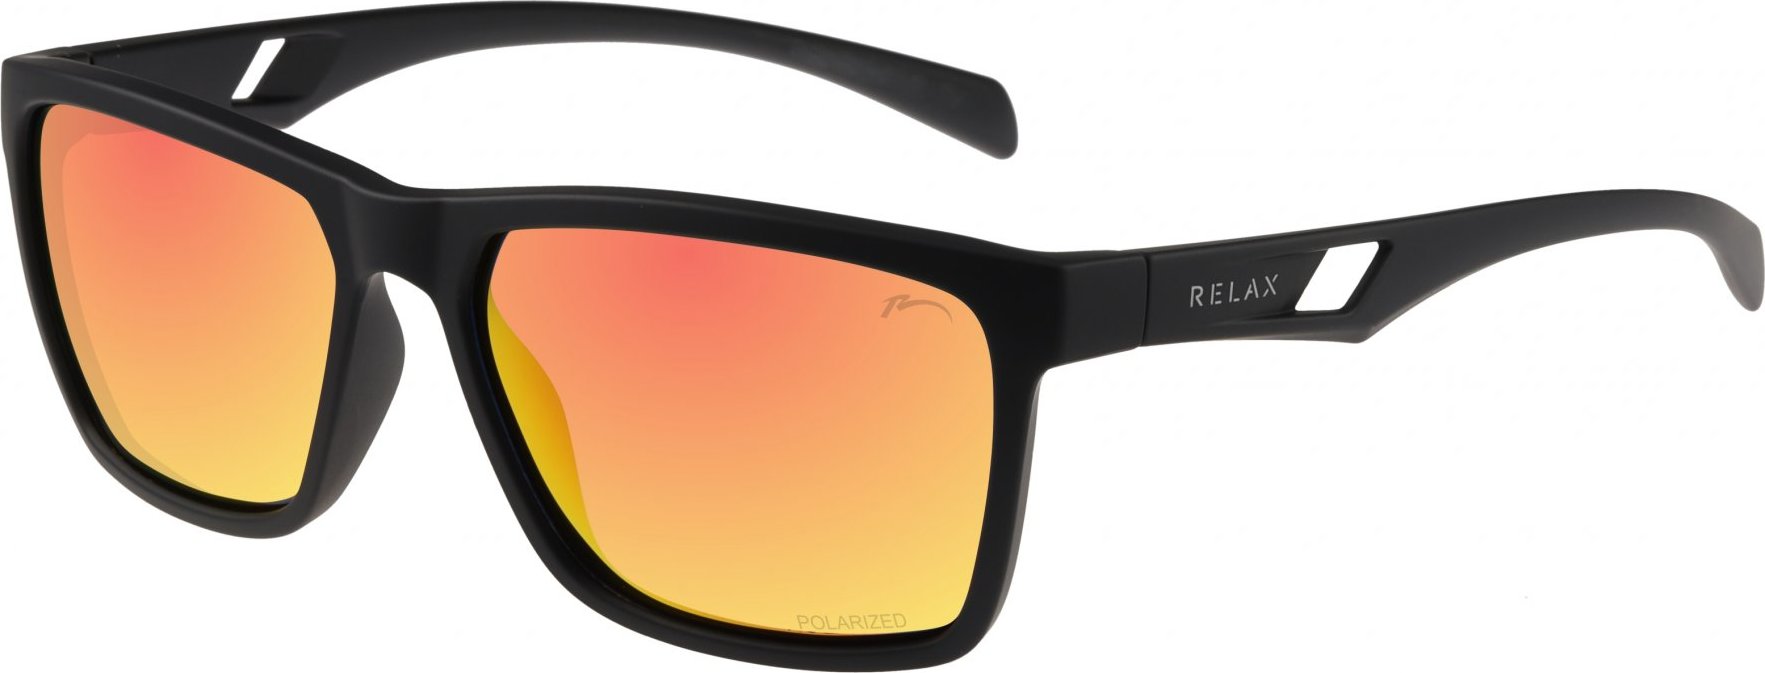 Polarizační sluneční brýle RELAX Orange černé